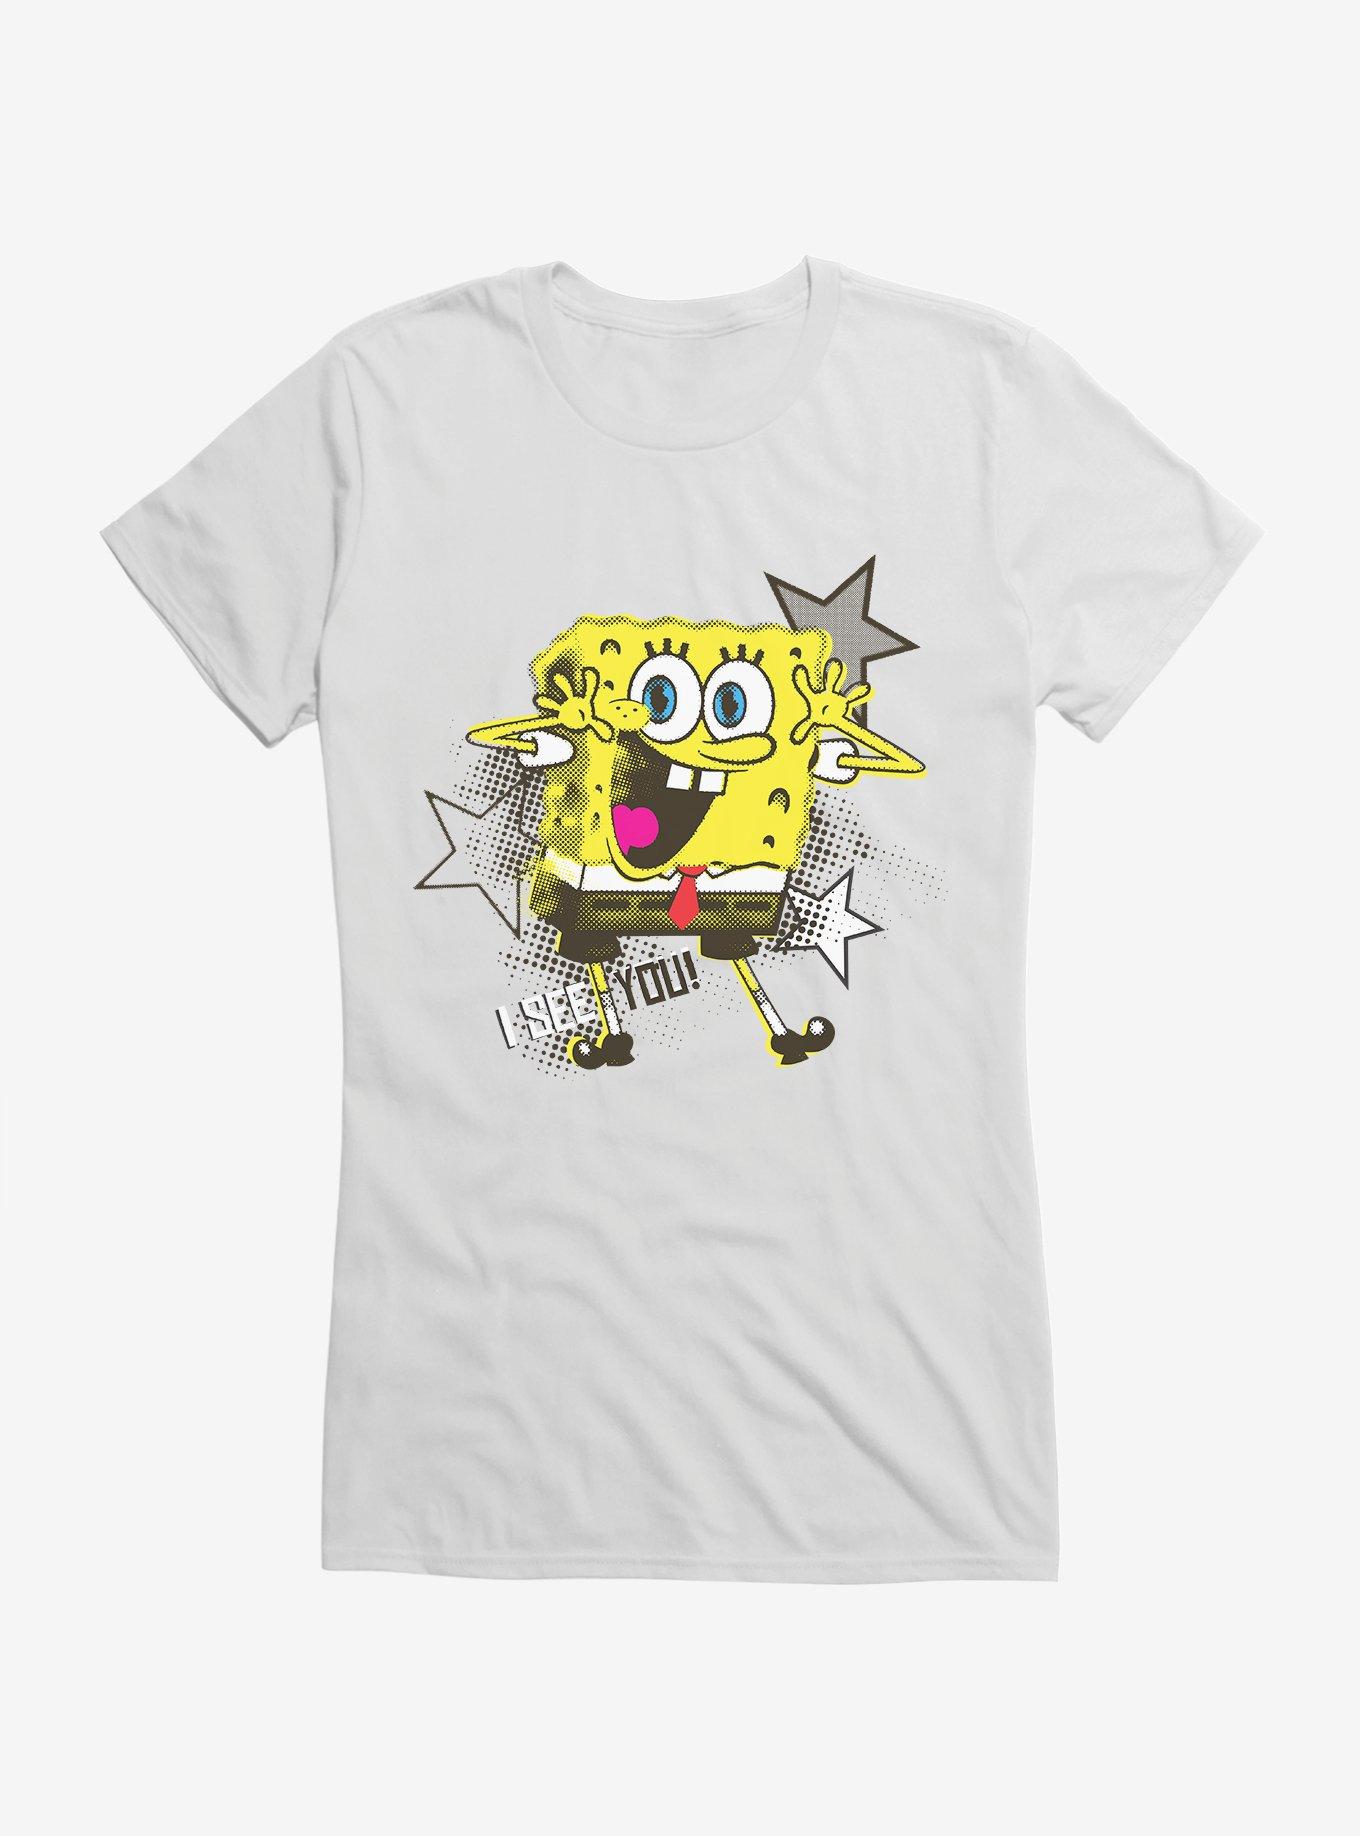 SpongeBob SquarePants I See You Stars Girls T-Shirt | Hot Topic